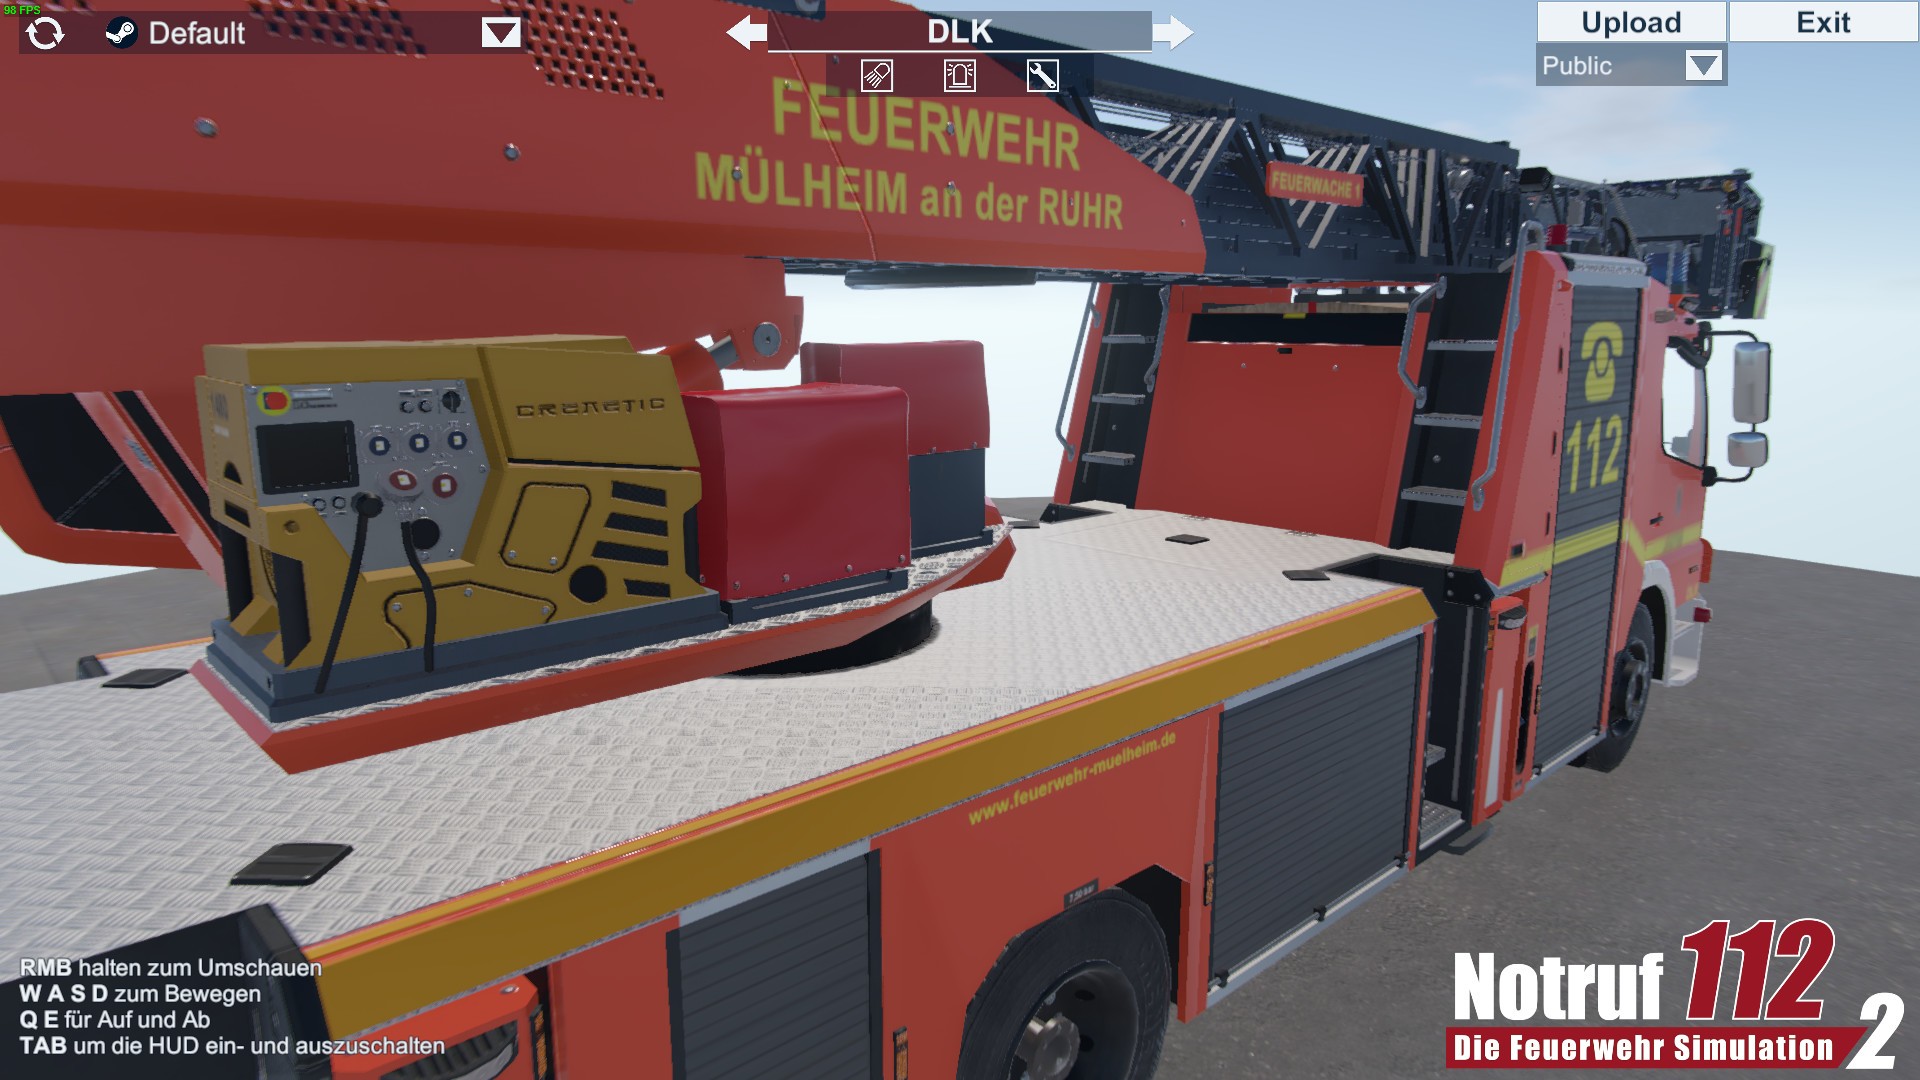 Notruf 112 - Die Feuerwehr Simulation 2: Showroom - release date